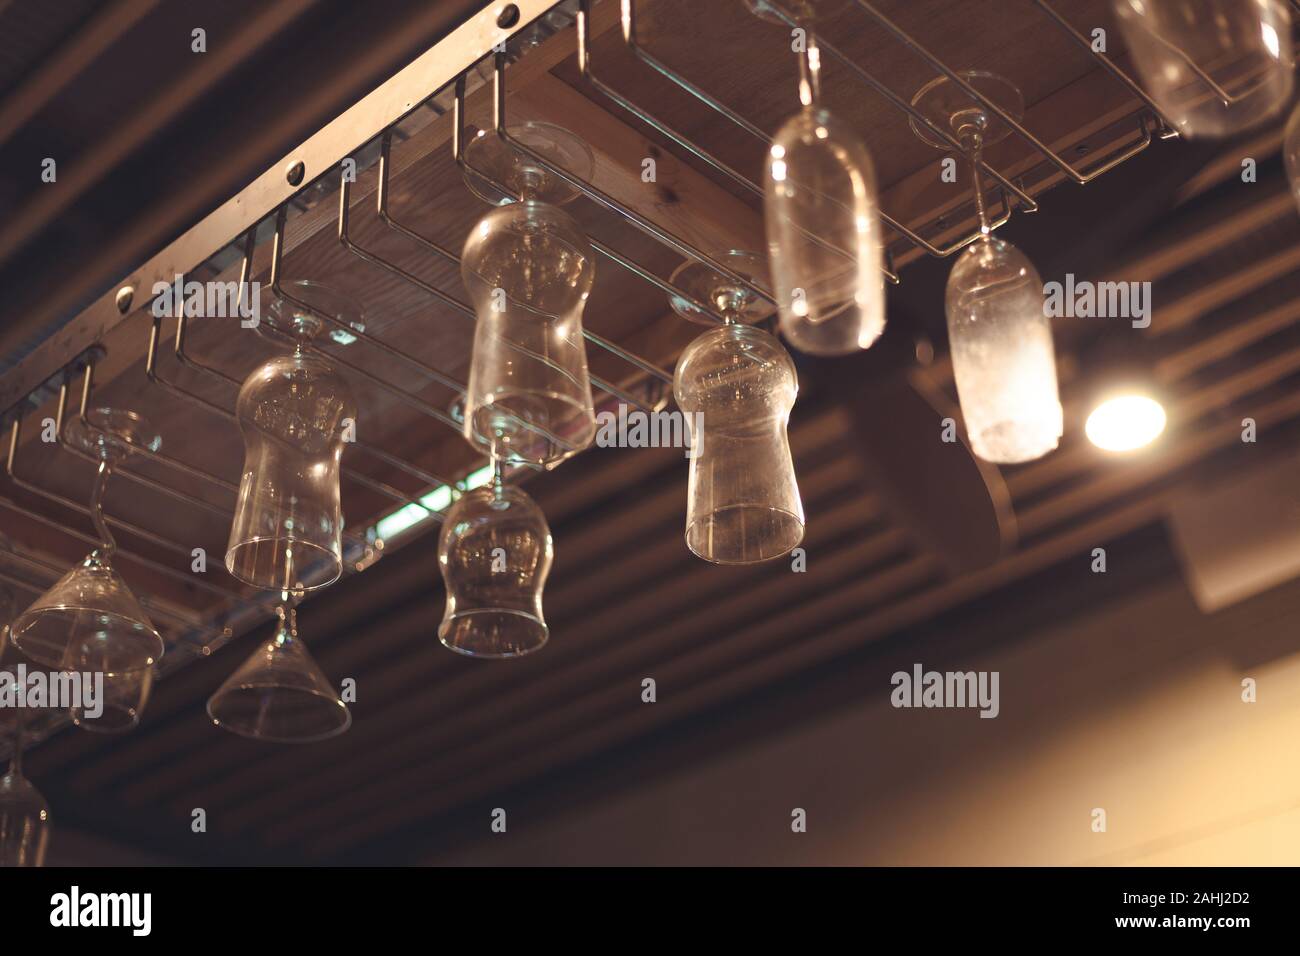 Wein Glas hängen oben in der Leiste bei Nacht Stockfoto